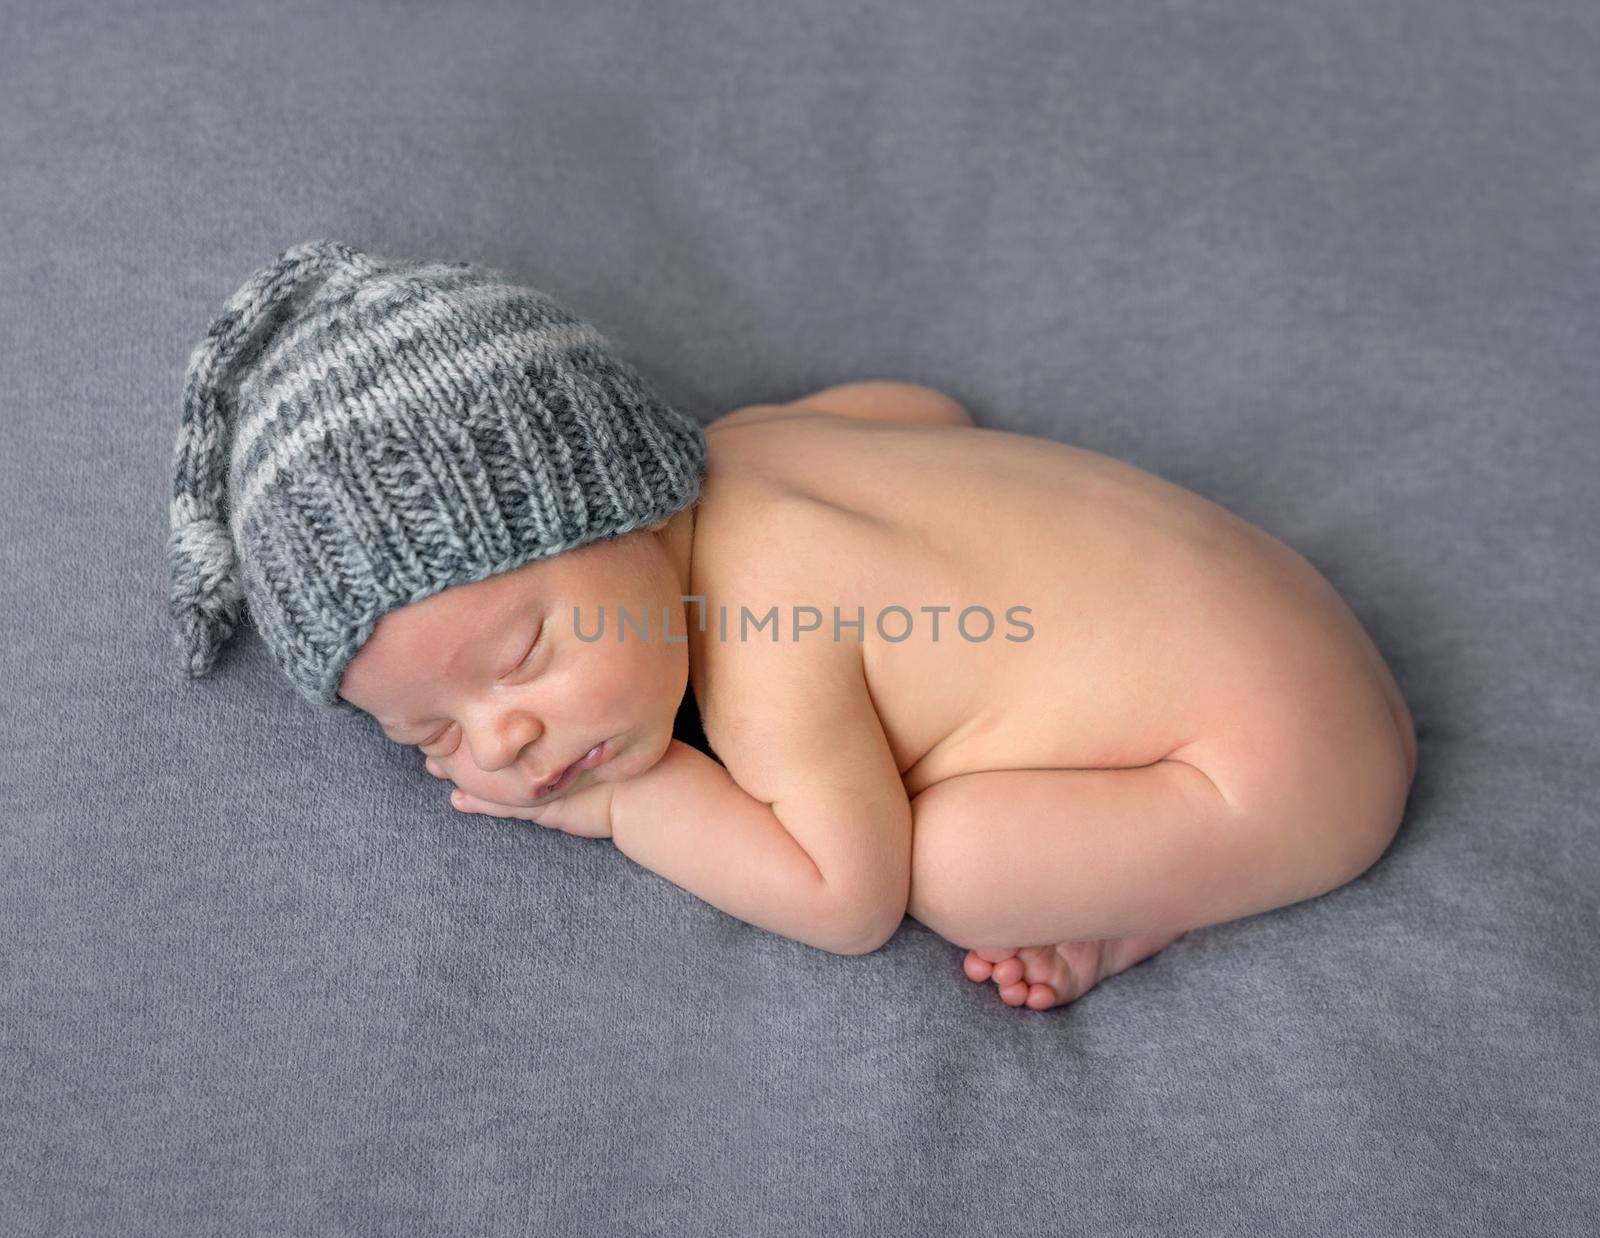 lovely naked newborn in hat sleeping on blanket by tan4ikk1